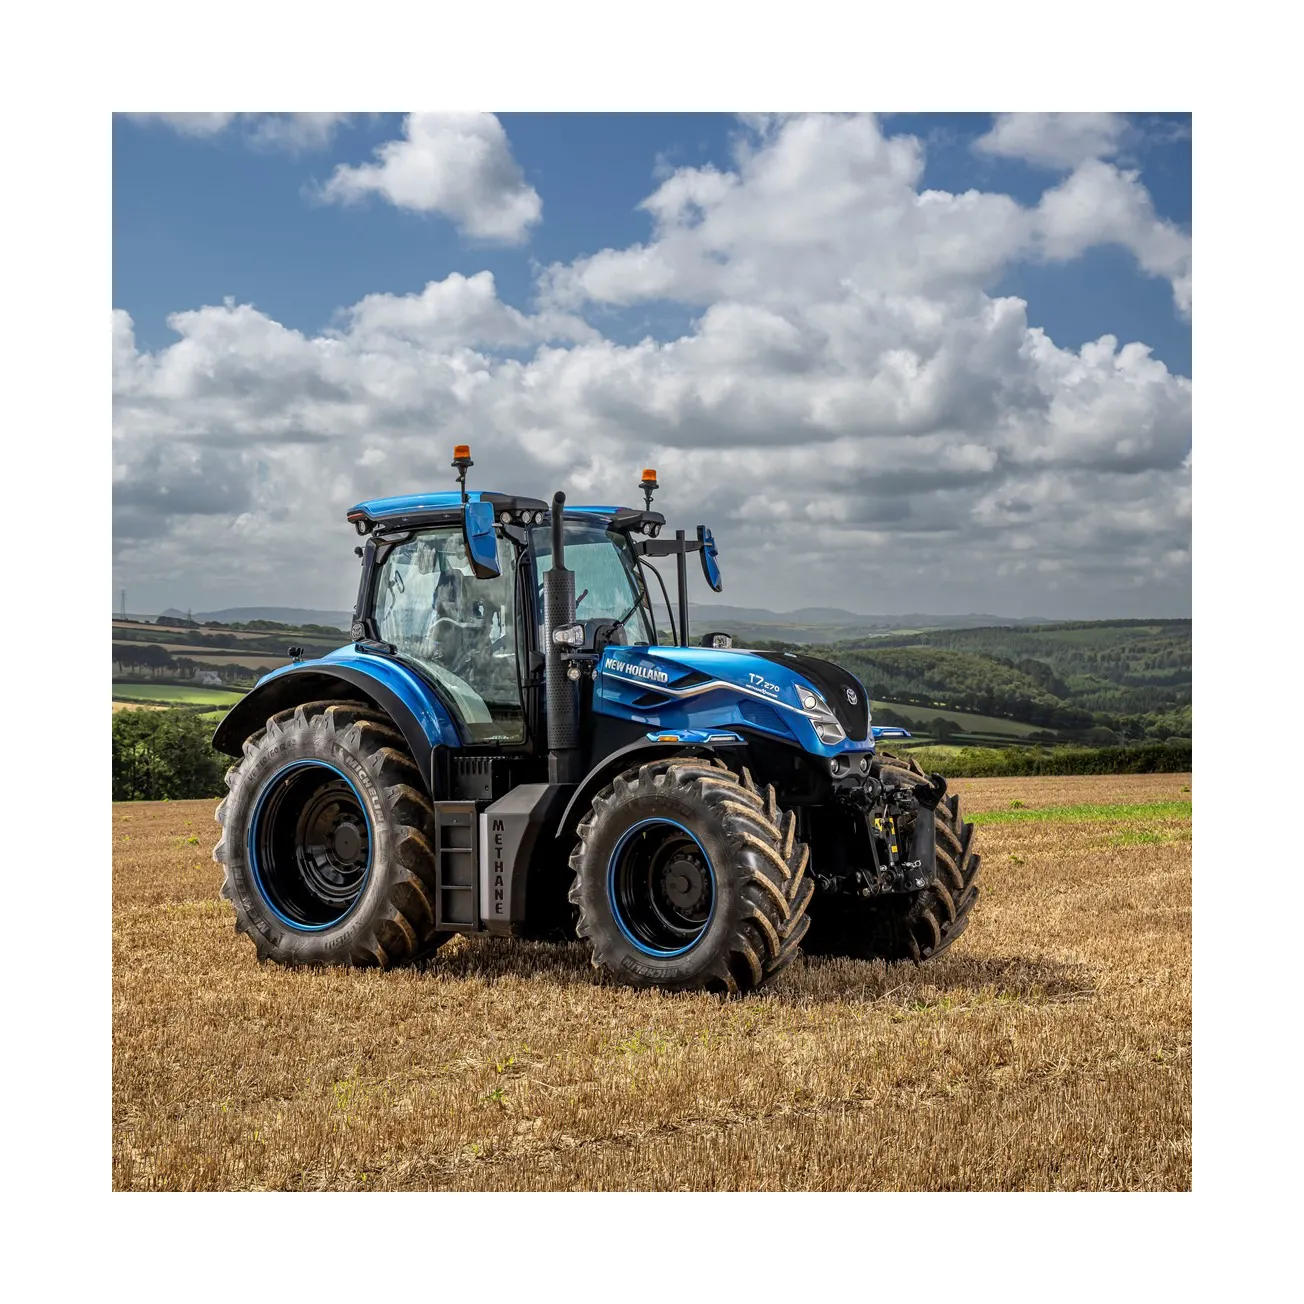 Harga Murah digunakan/Kedua tangan/traktor baru 4X4wd Belanda baru dengan pemuat dan peralatan pertanian mesin untuk dijual